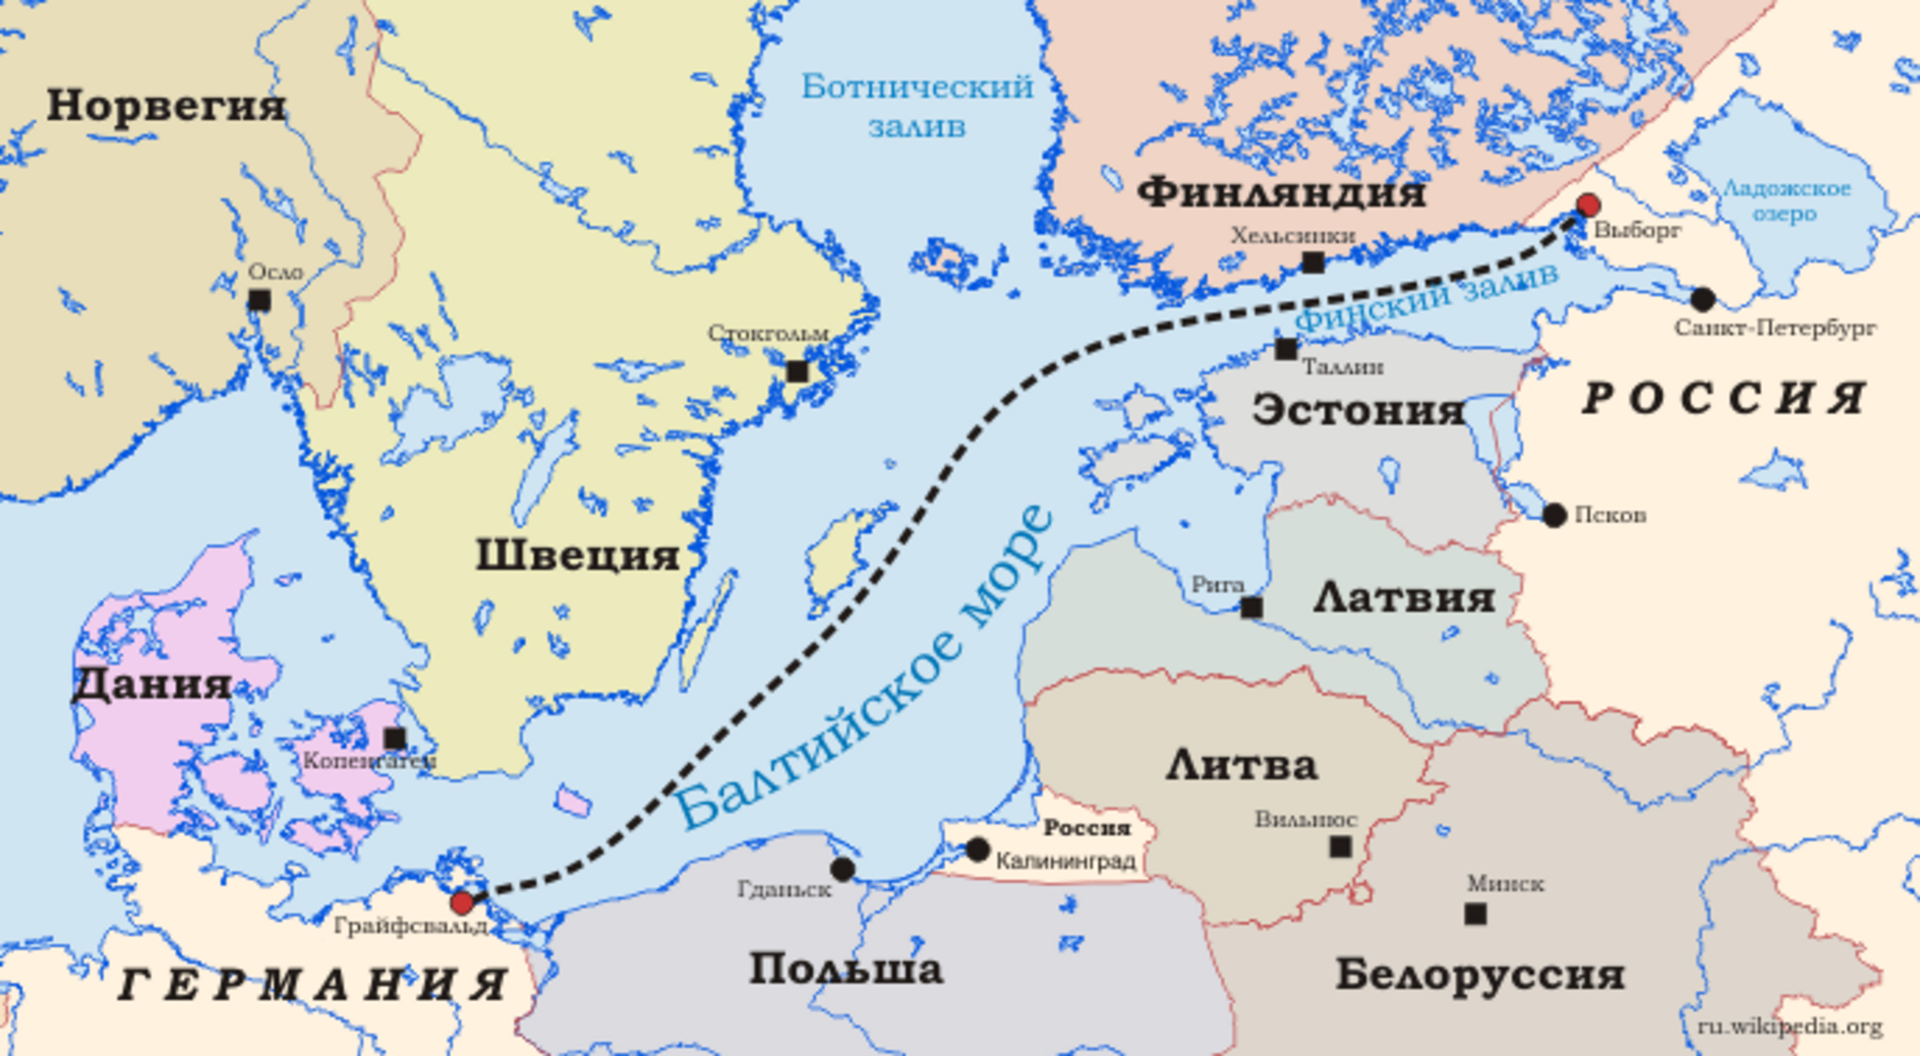 Карта газопровода Северный поток 2 в Балтийском море. Северный поток 1 и 2 газопровод карта. Балтийское море границы России. Нефтепровод Северный поток 2 на карте.